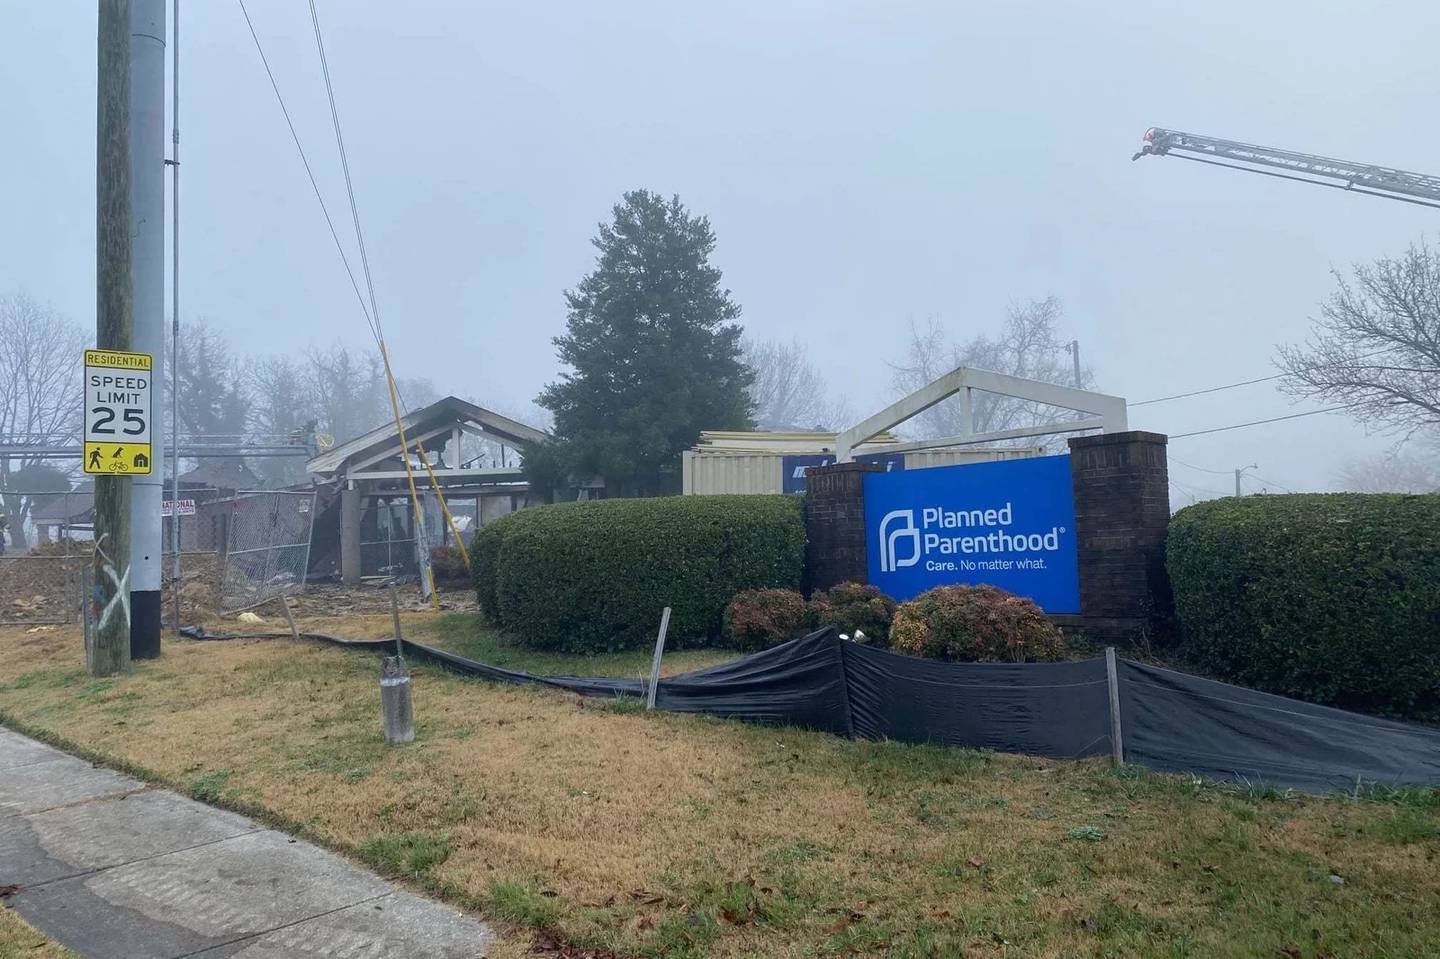 Abortklinikk, Knoxville brant ned 31. desember